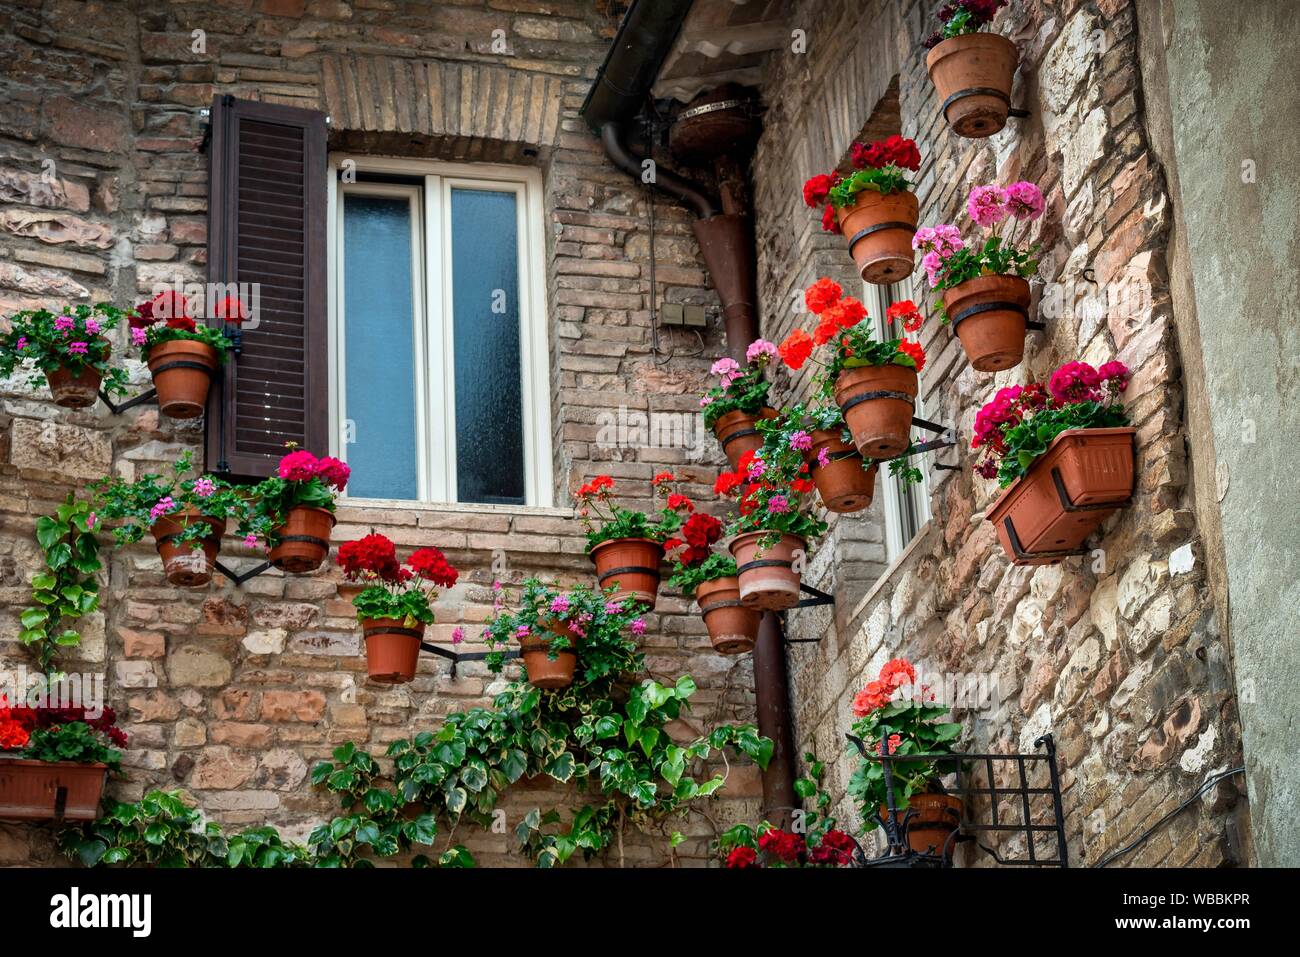 Blumen schmücken die Wand eines Hauses in Assisi Umbrien Italien Worlld Lage. Stockfoto